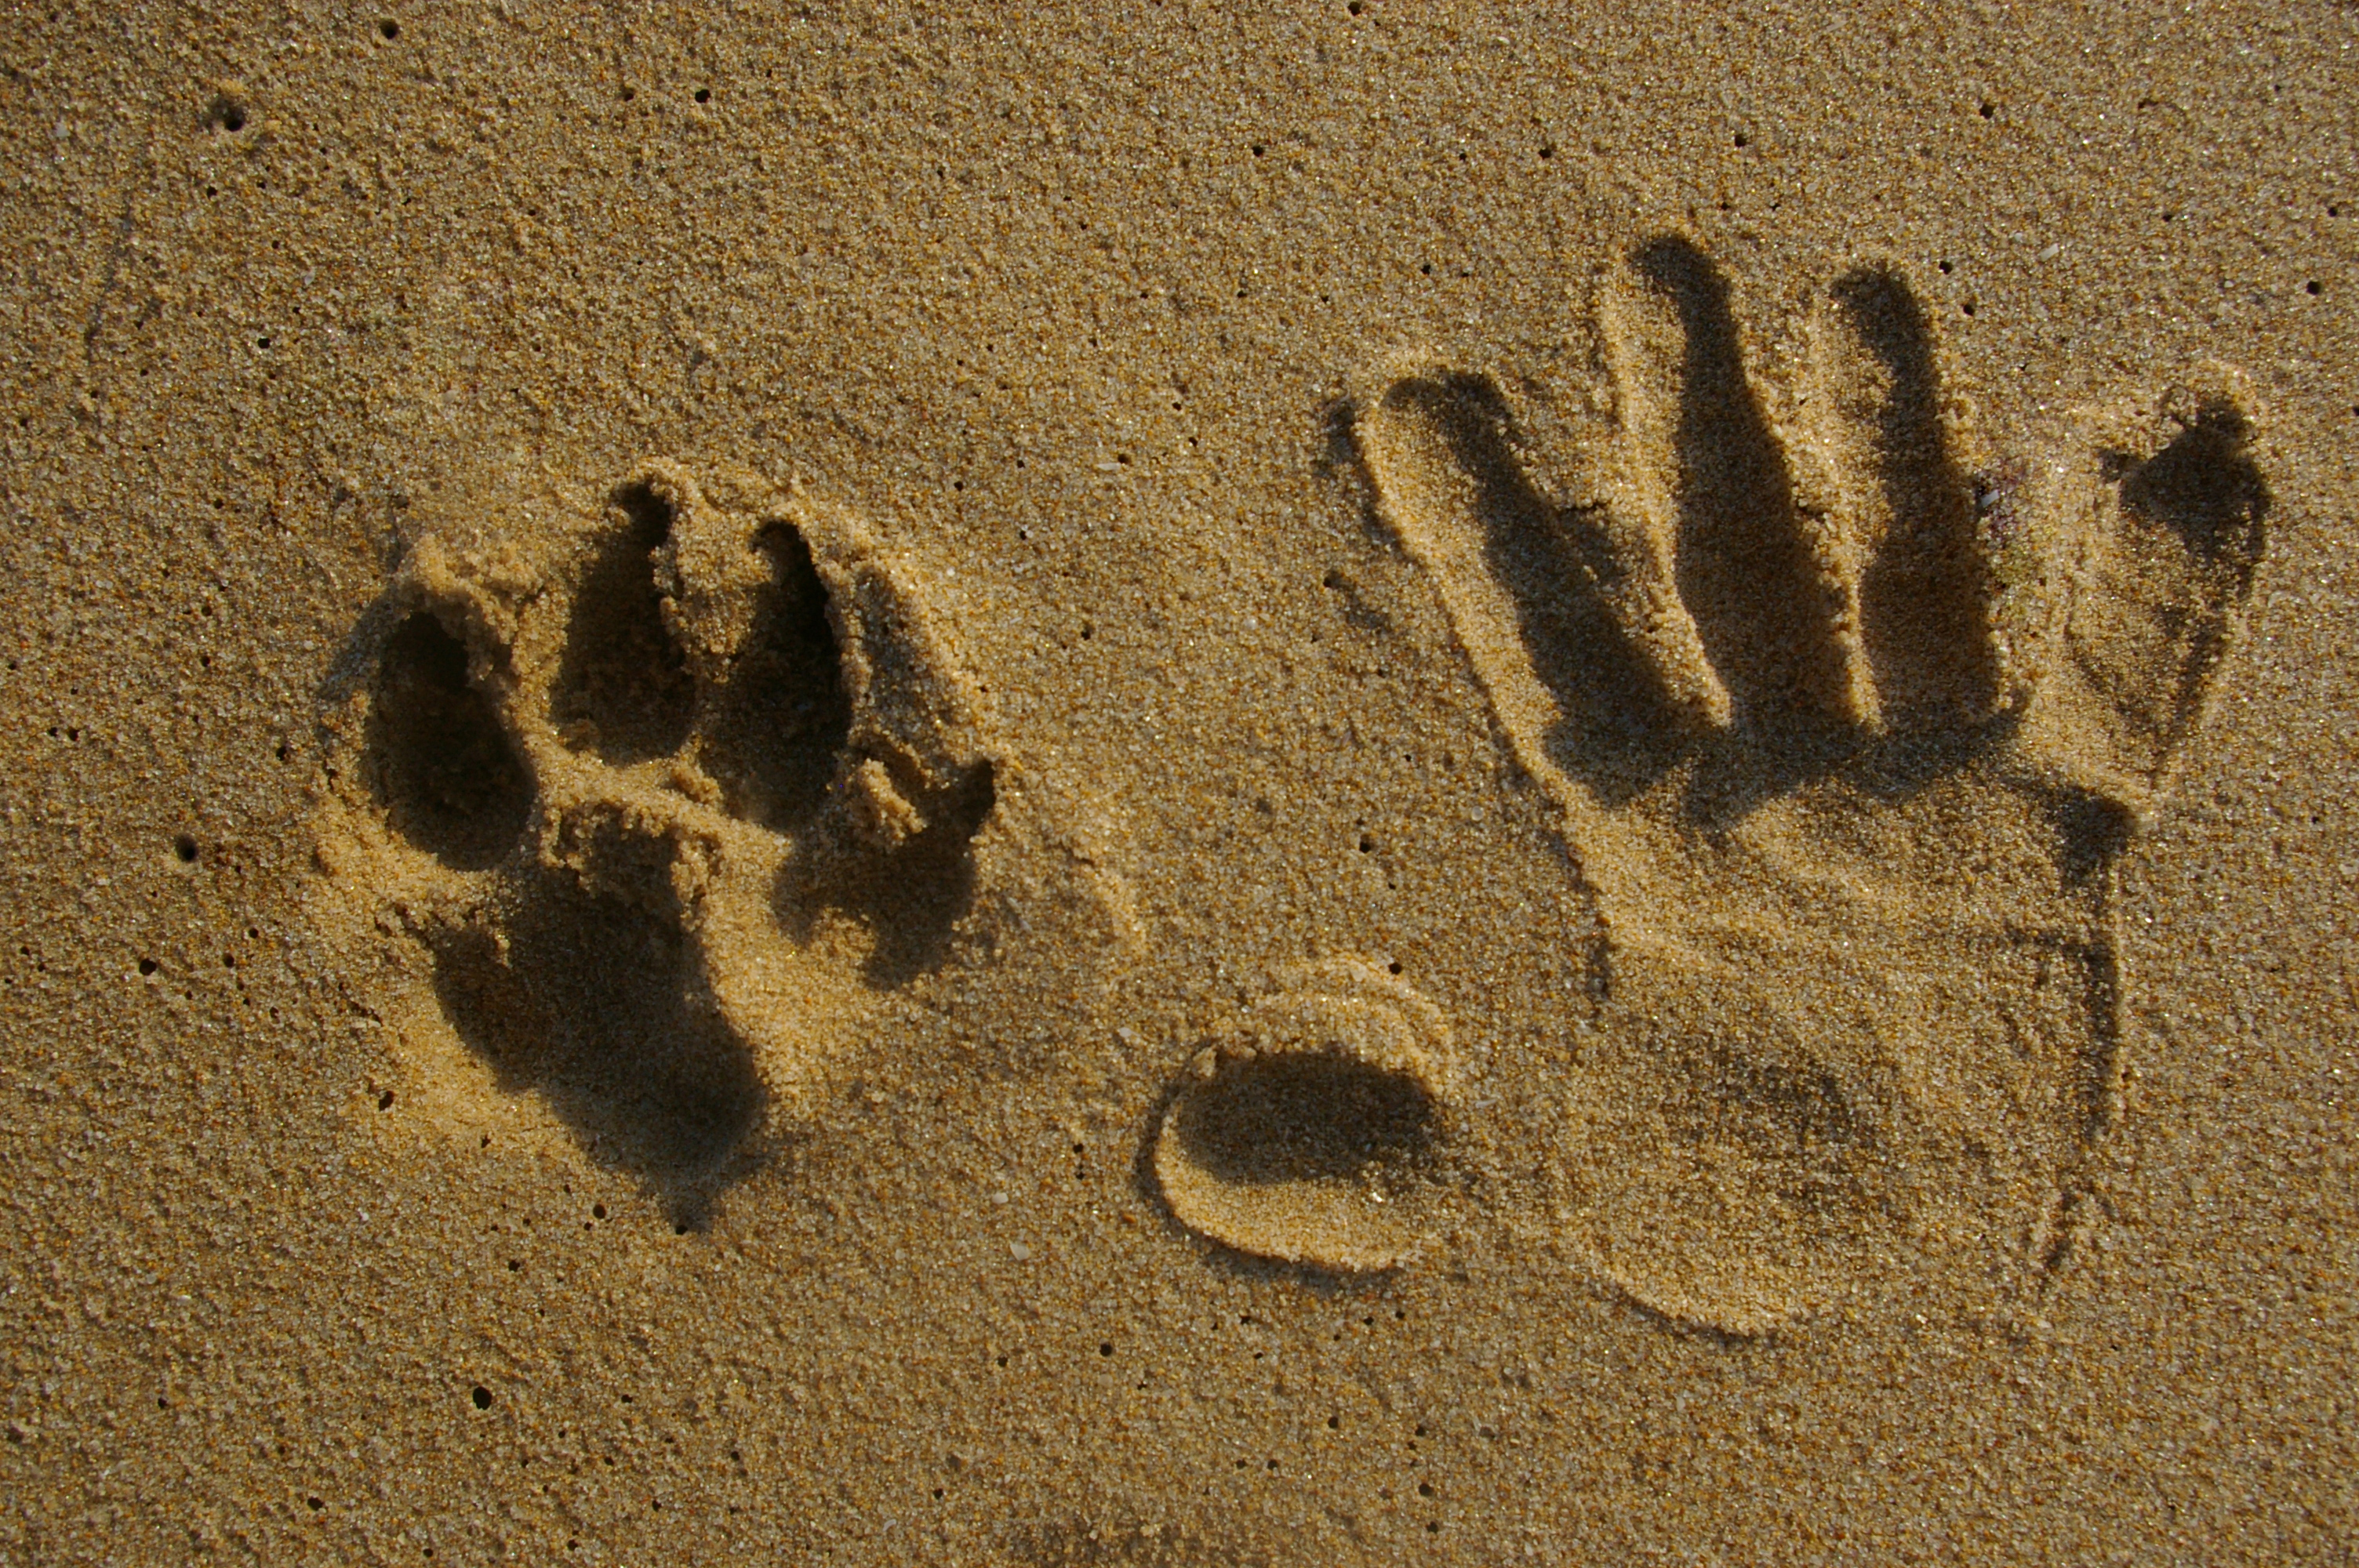 На песке остается след. Следы животных на песке. Следы собаки на песке. Следы коровы на песке. Отпечатки лап на песке.